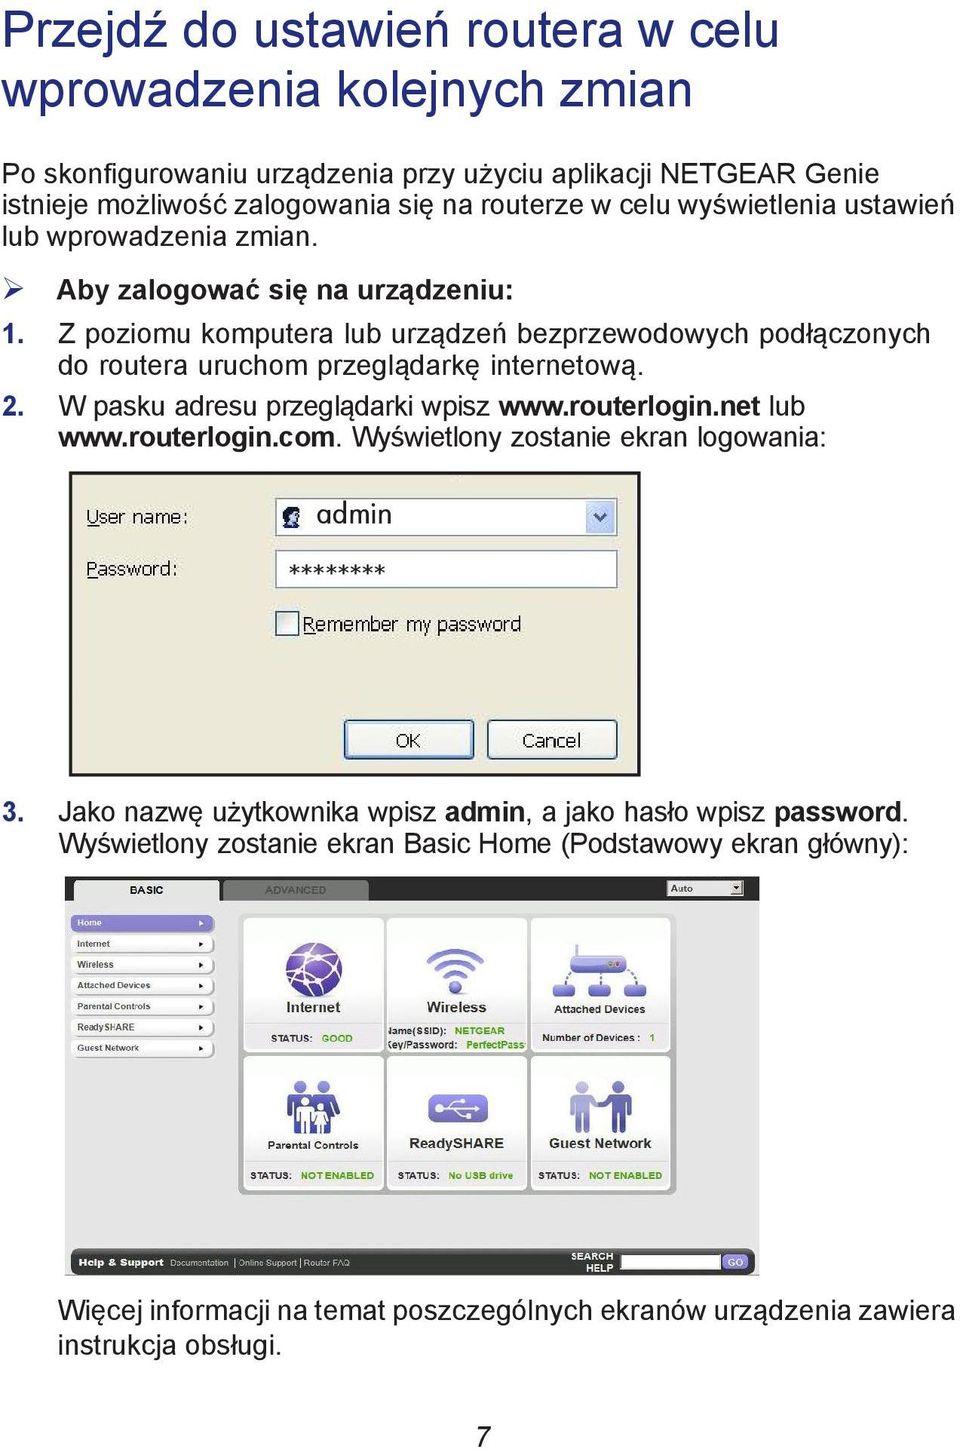 Z poziomu komputera lub urządzeń bezprzewodowych podłączonych do routera uruchom przeglądarkę internetową. 2. W pasku adresu przeglądarki wpisz www.routerlogin.net lub www.